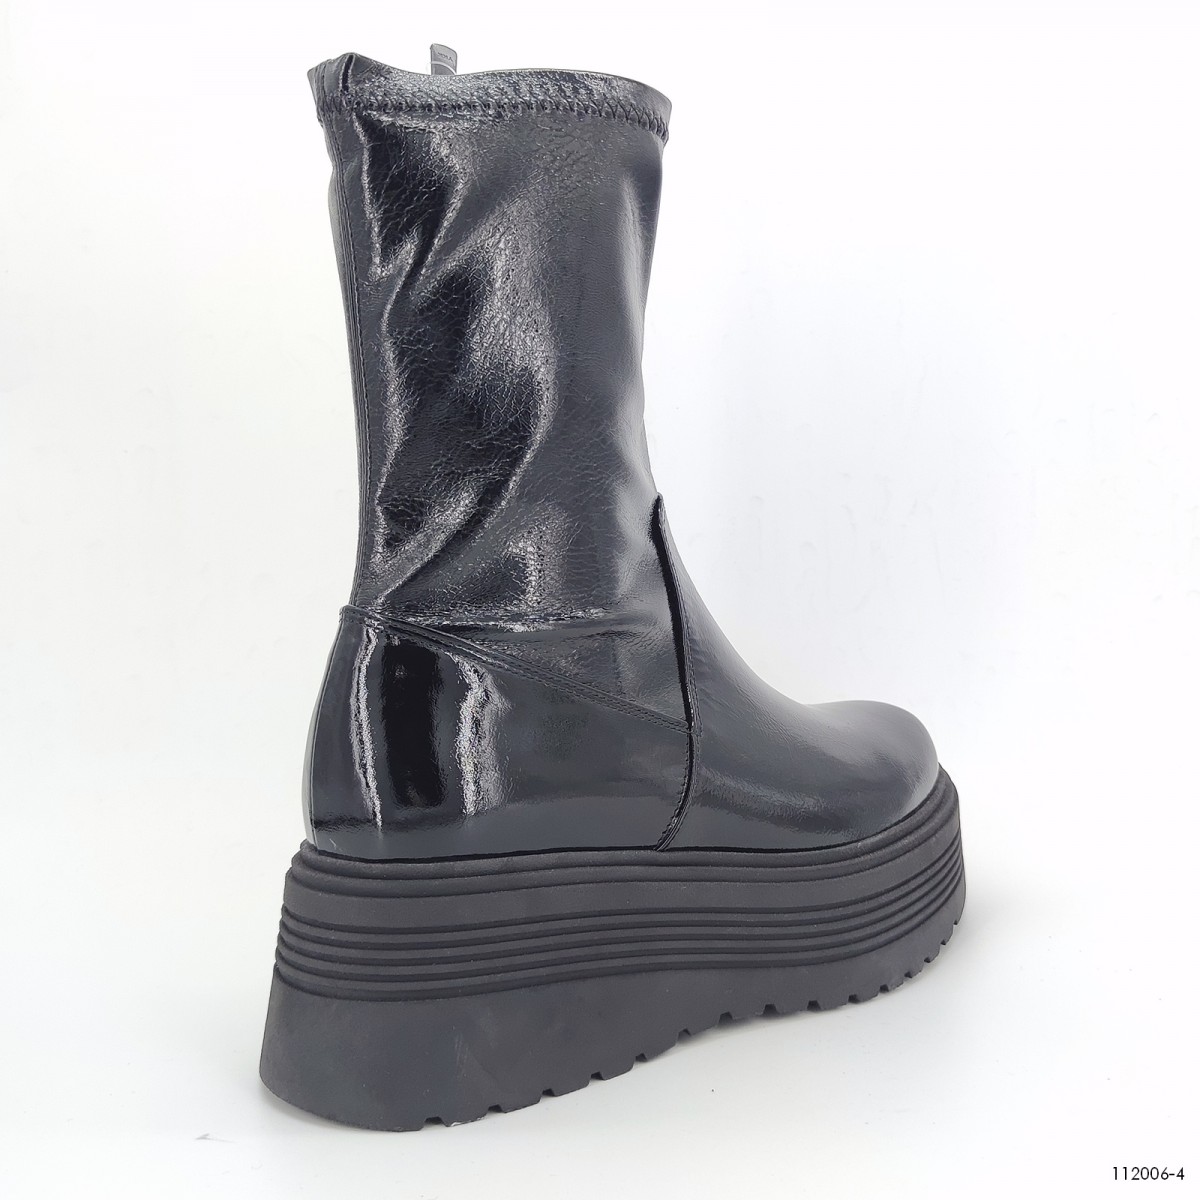 112 006, ботинки на платформе Casoreti женские зимние, черный